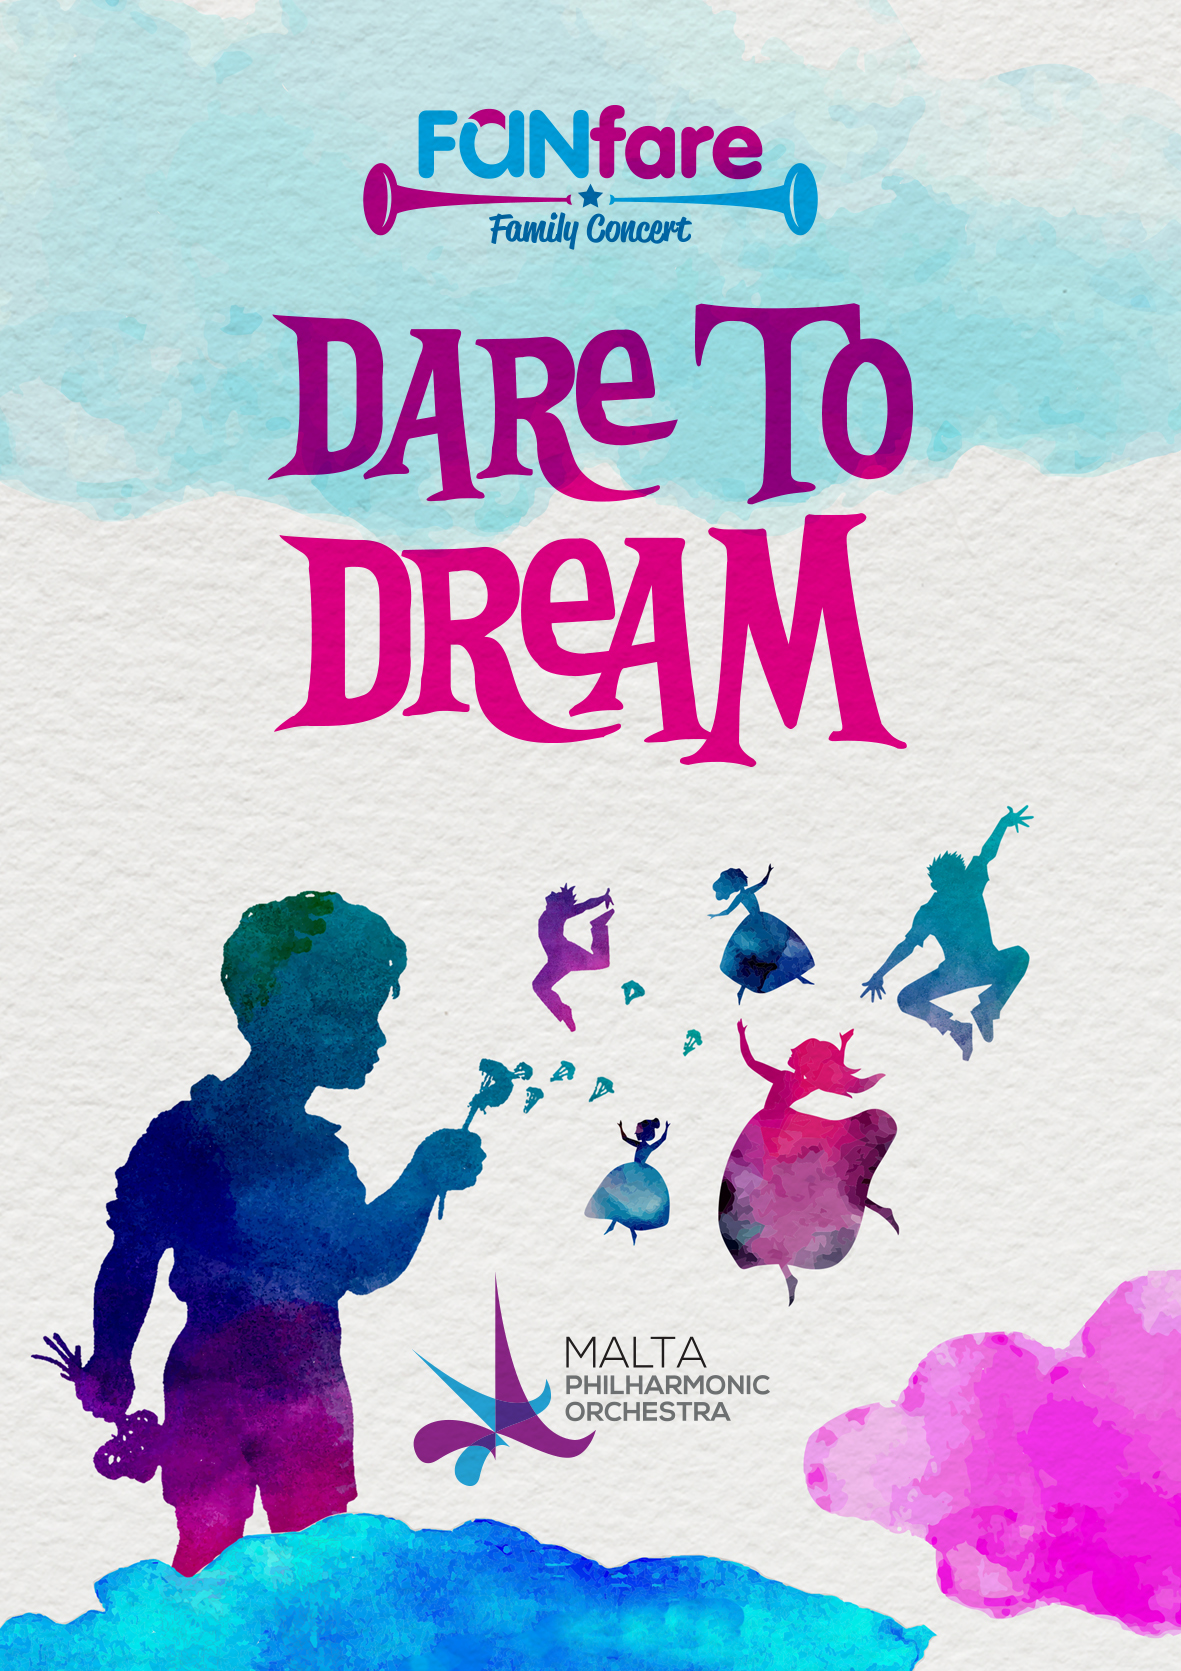 Dare to Dream - MPO Family Fanfare concert poster